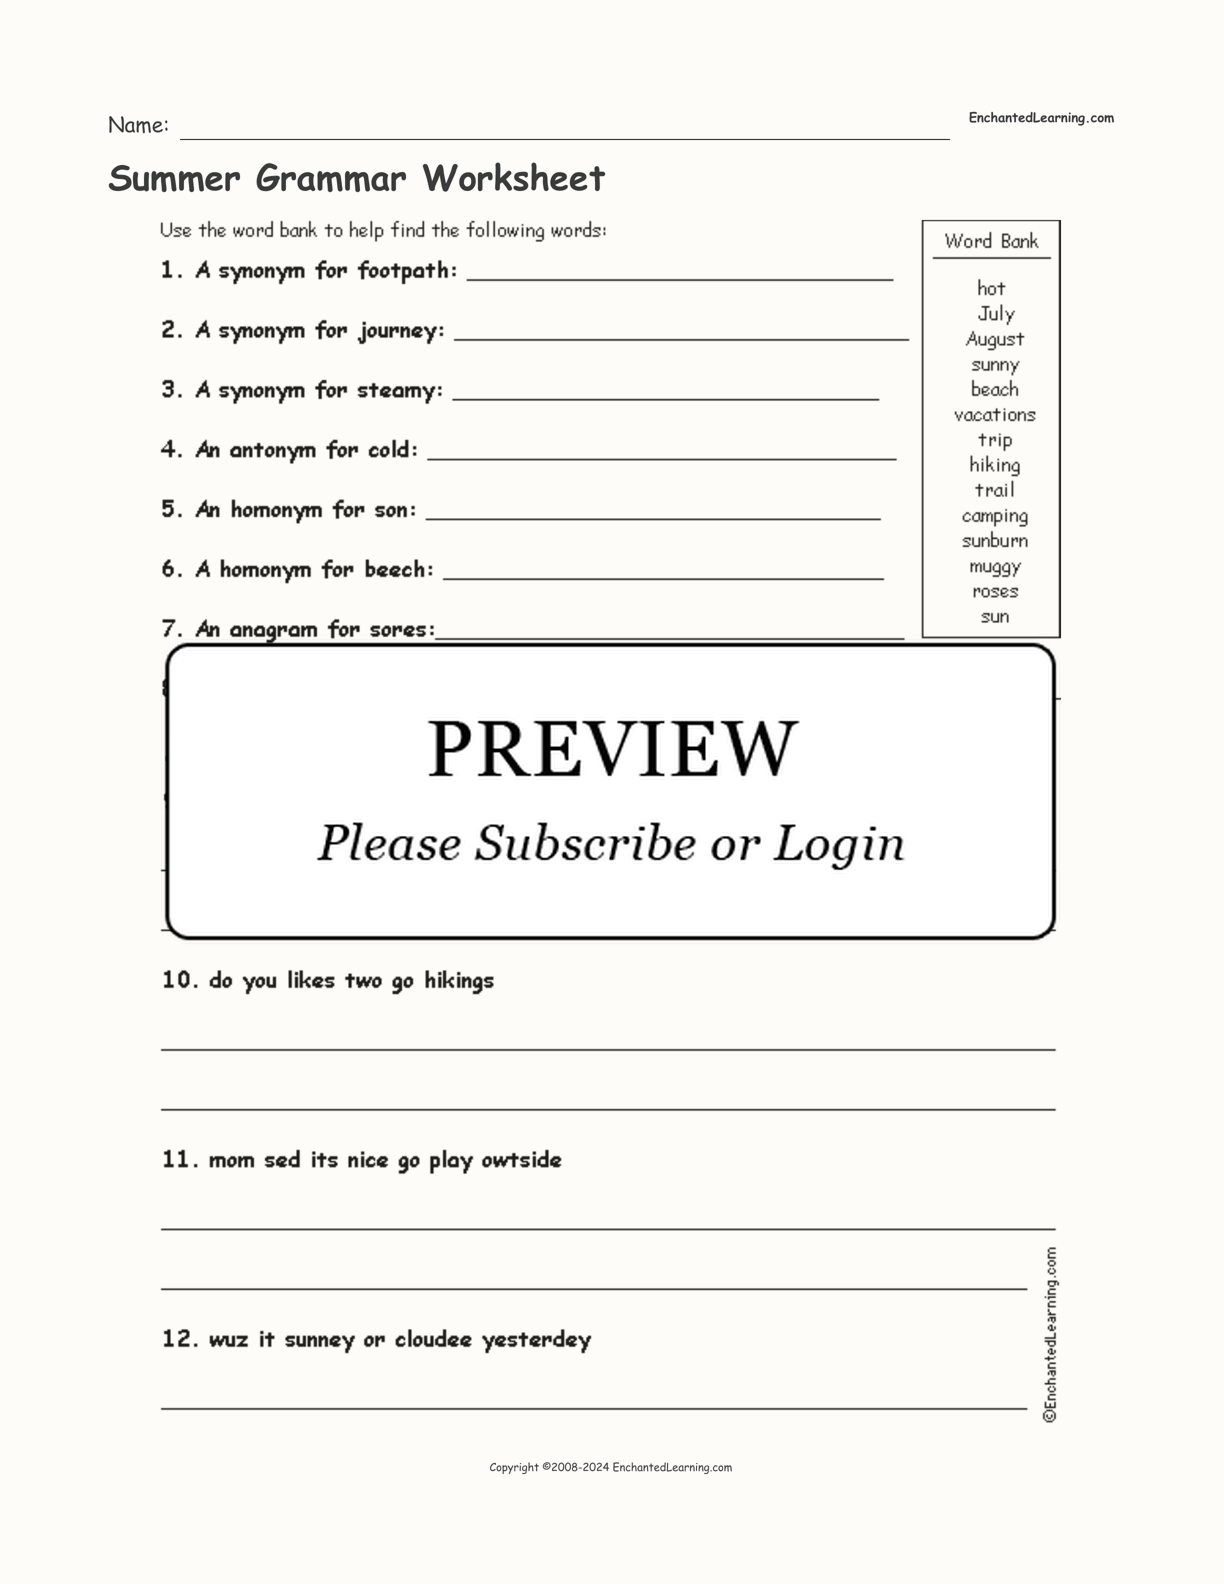 Summer Grammar Worksheet interactive worksheet page 1